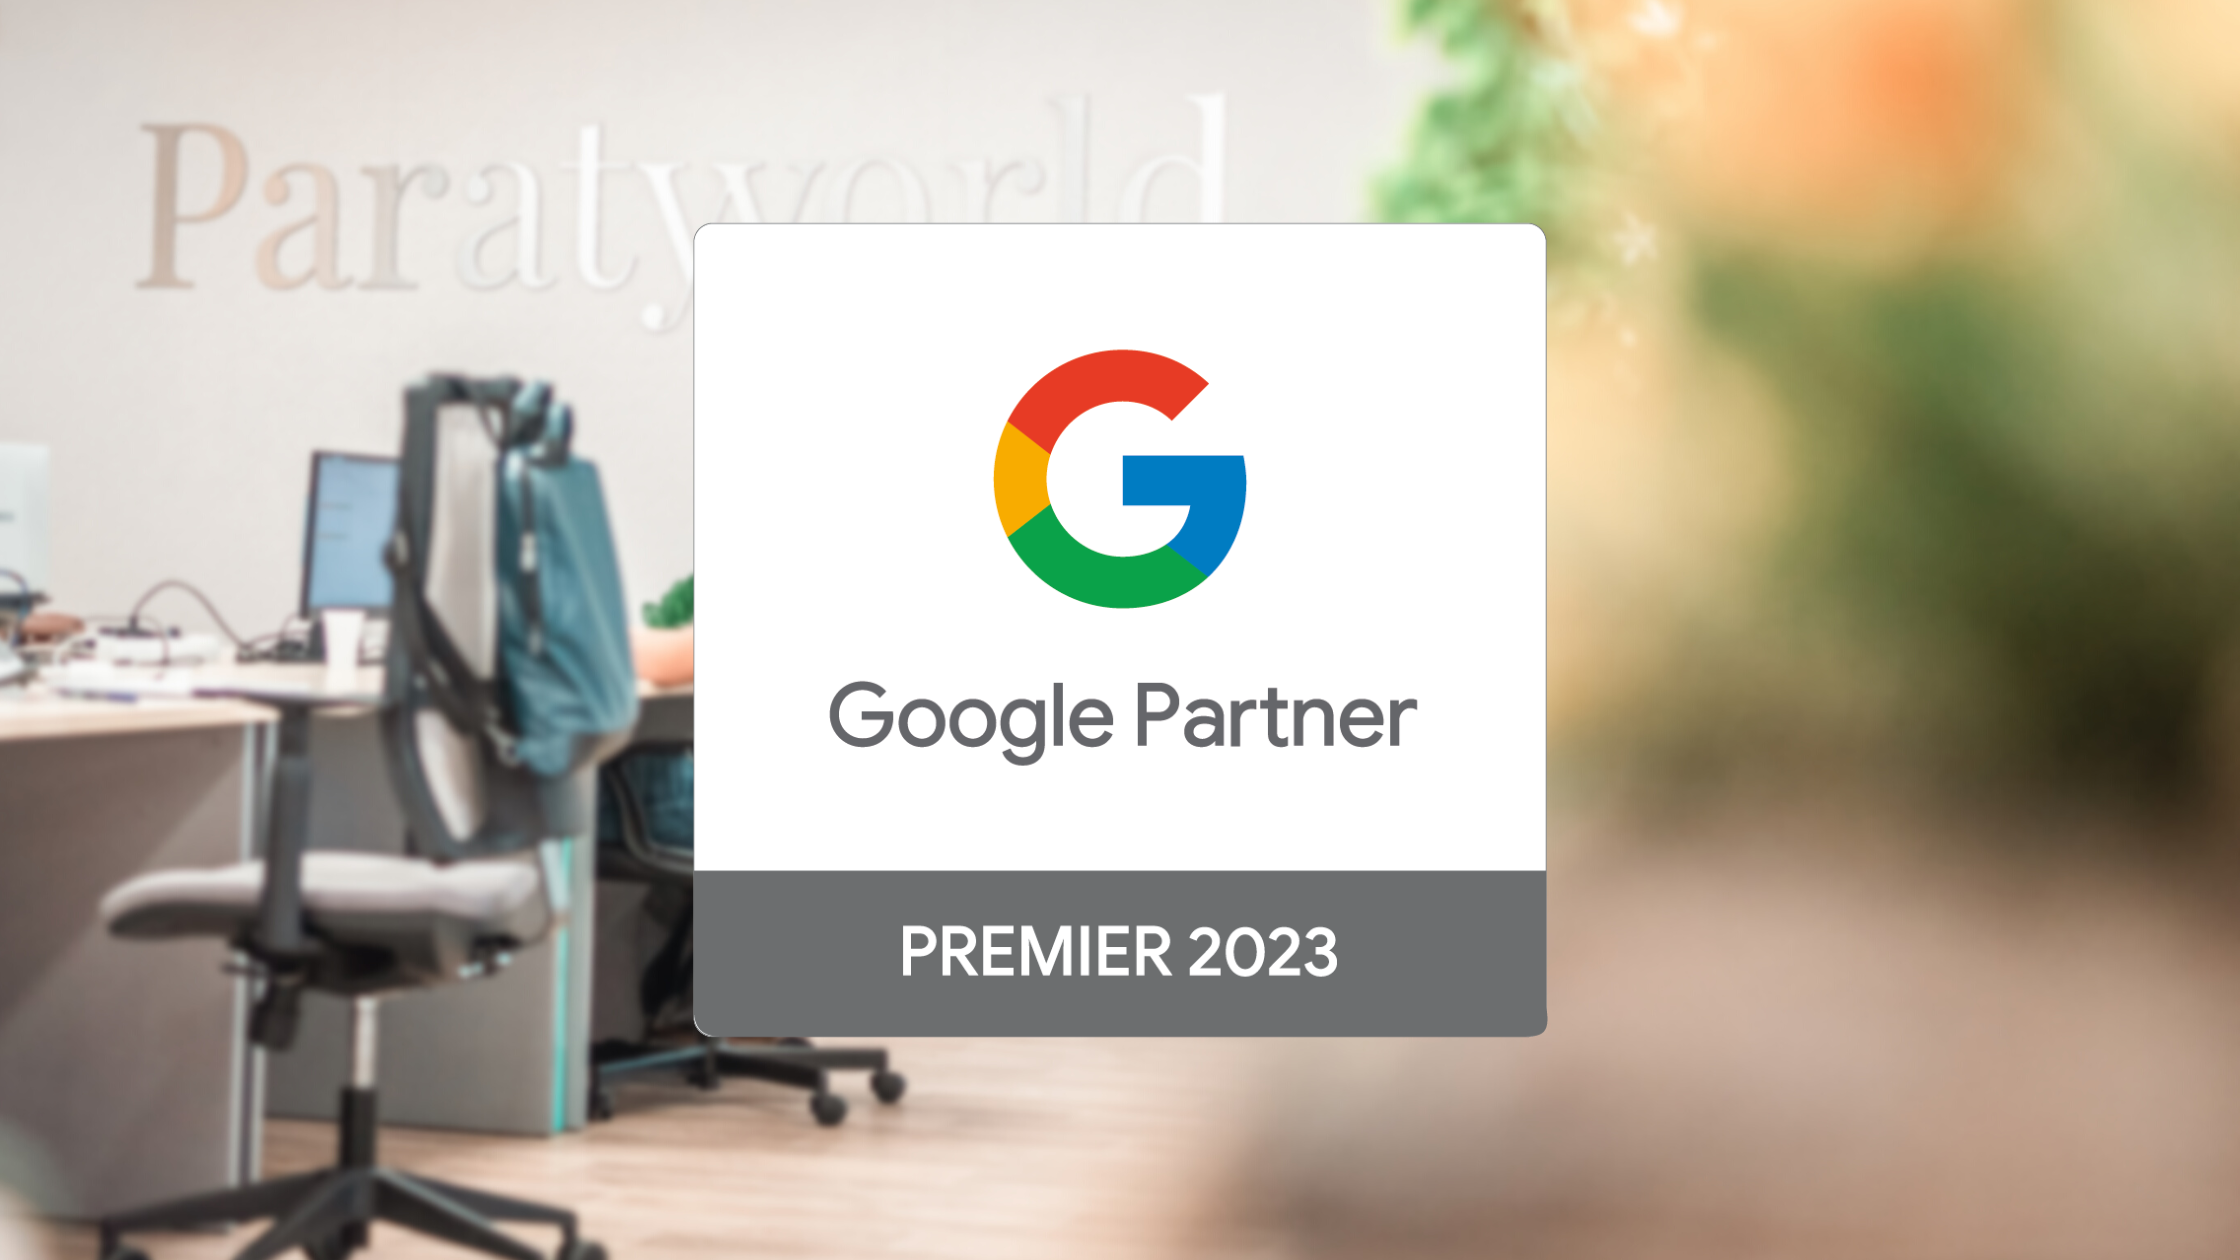 Paraty Tech obtém reconhecimento Google Partner Premier 2023